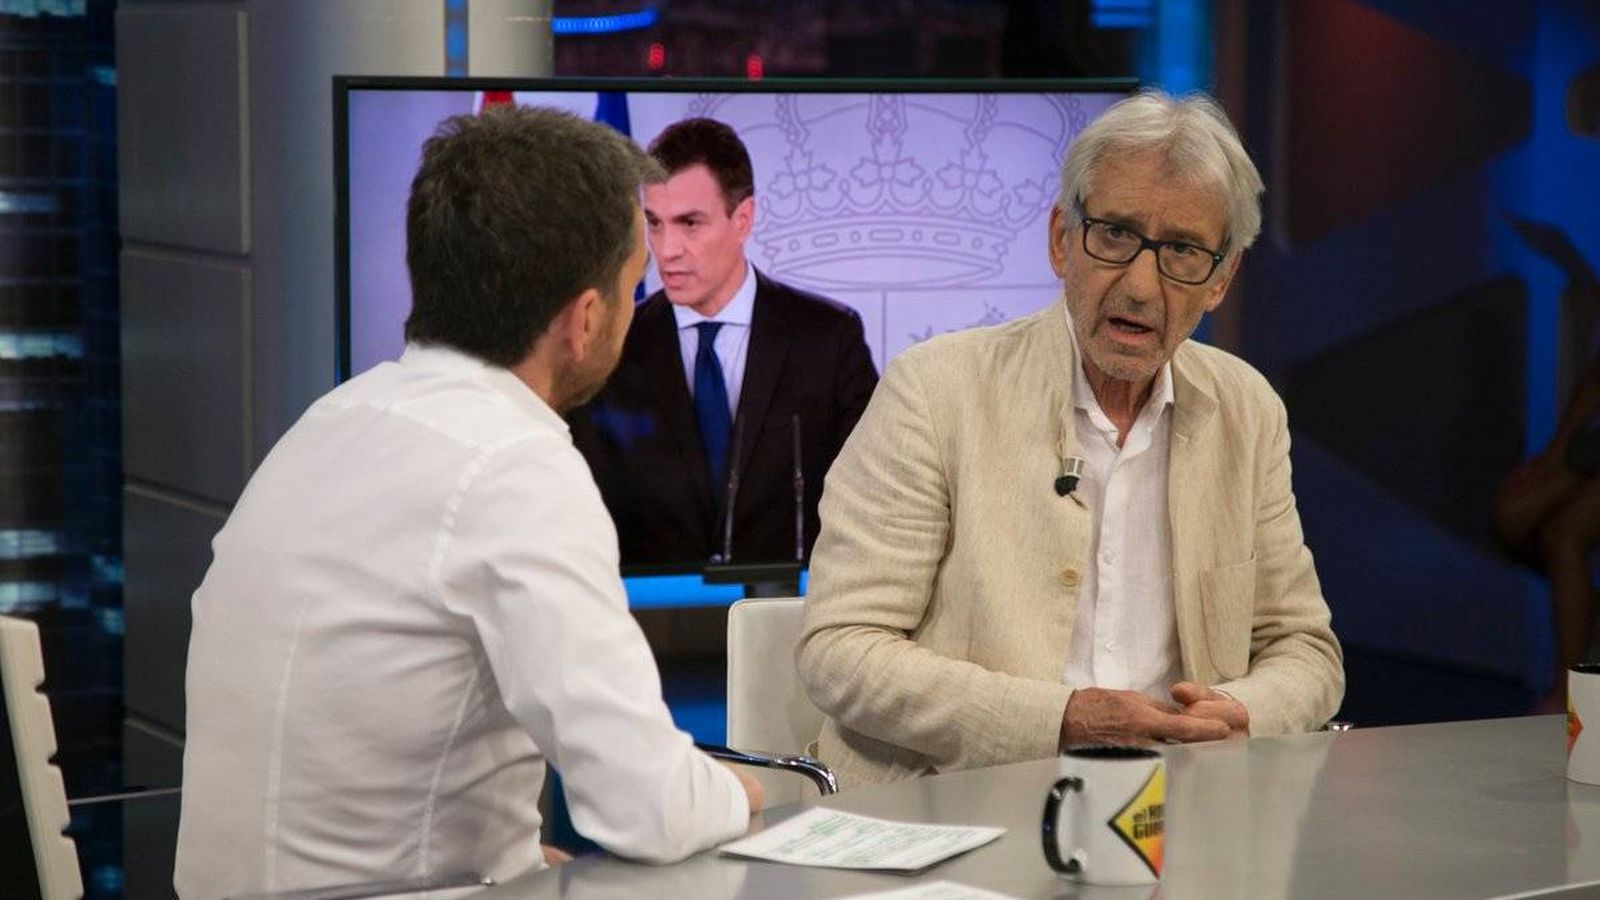 Foto: José Sacristán opina de Pedro Sánchez en 'El hormiguero'. (Antena 3)